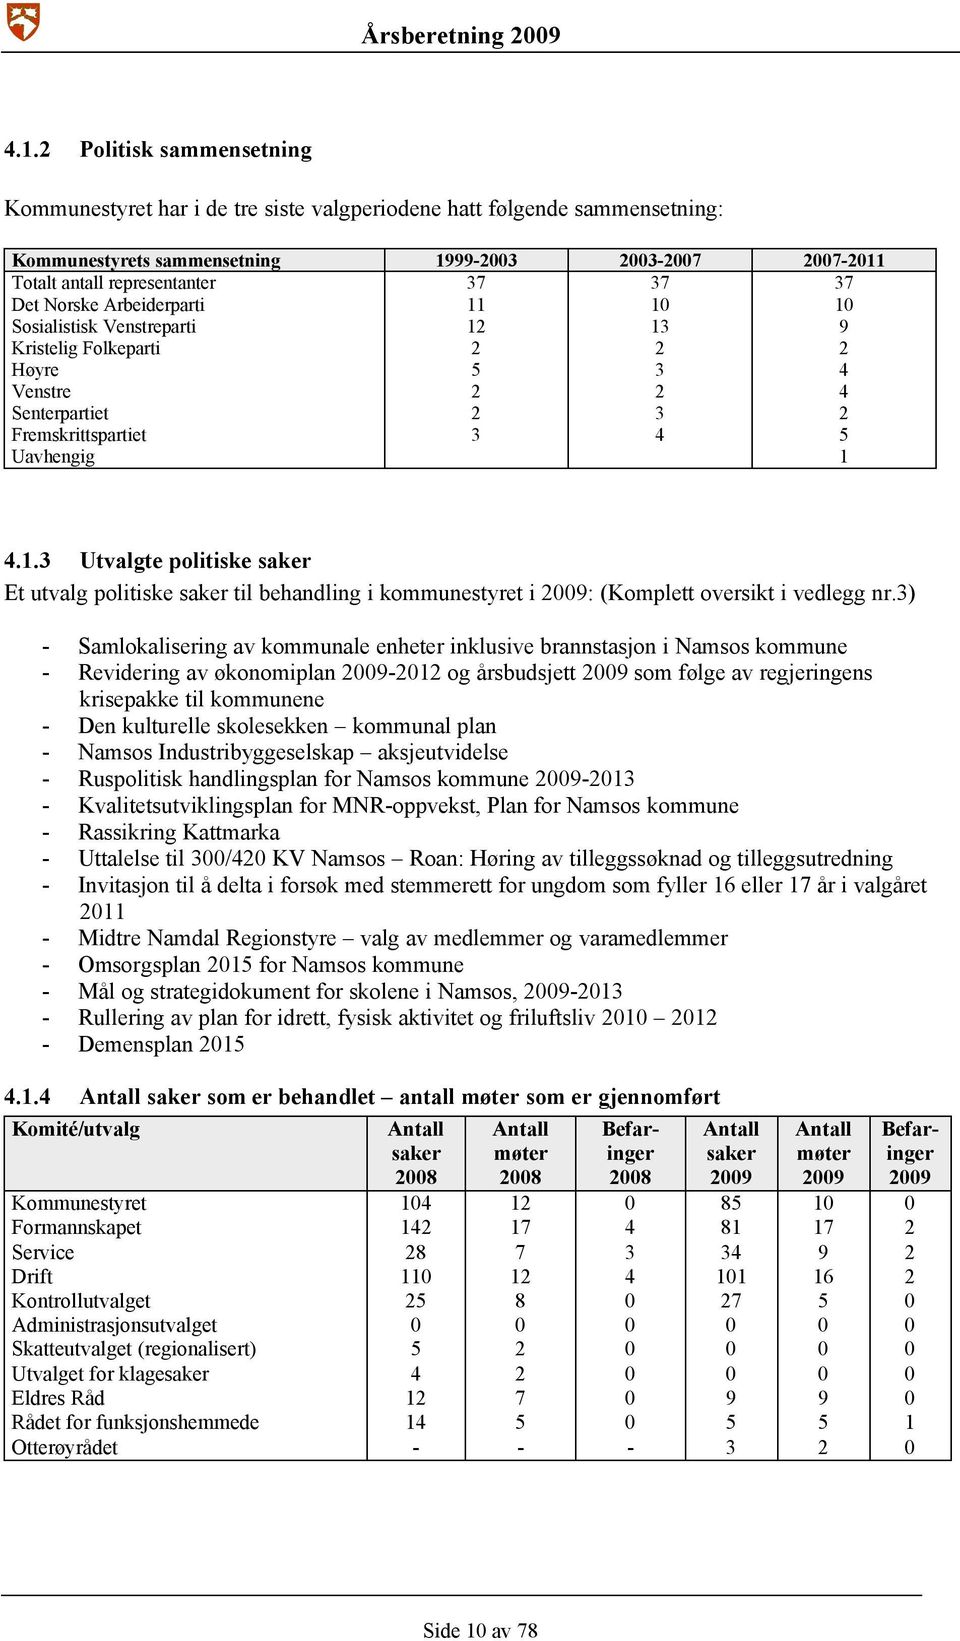 3) - Samlokalisering av kommunale enheter inklusive brannstasjon i Namsos kommune - Revidering av økonomiplan 2009-2012 og årsbudsjett 2009 som følge av regjeringens krisepakke til kommunene - Den